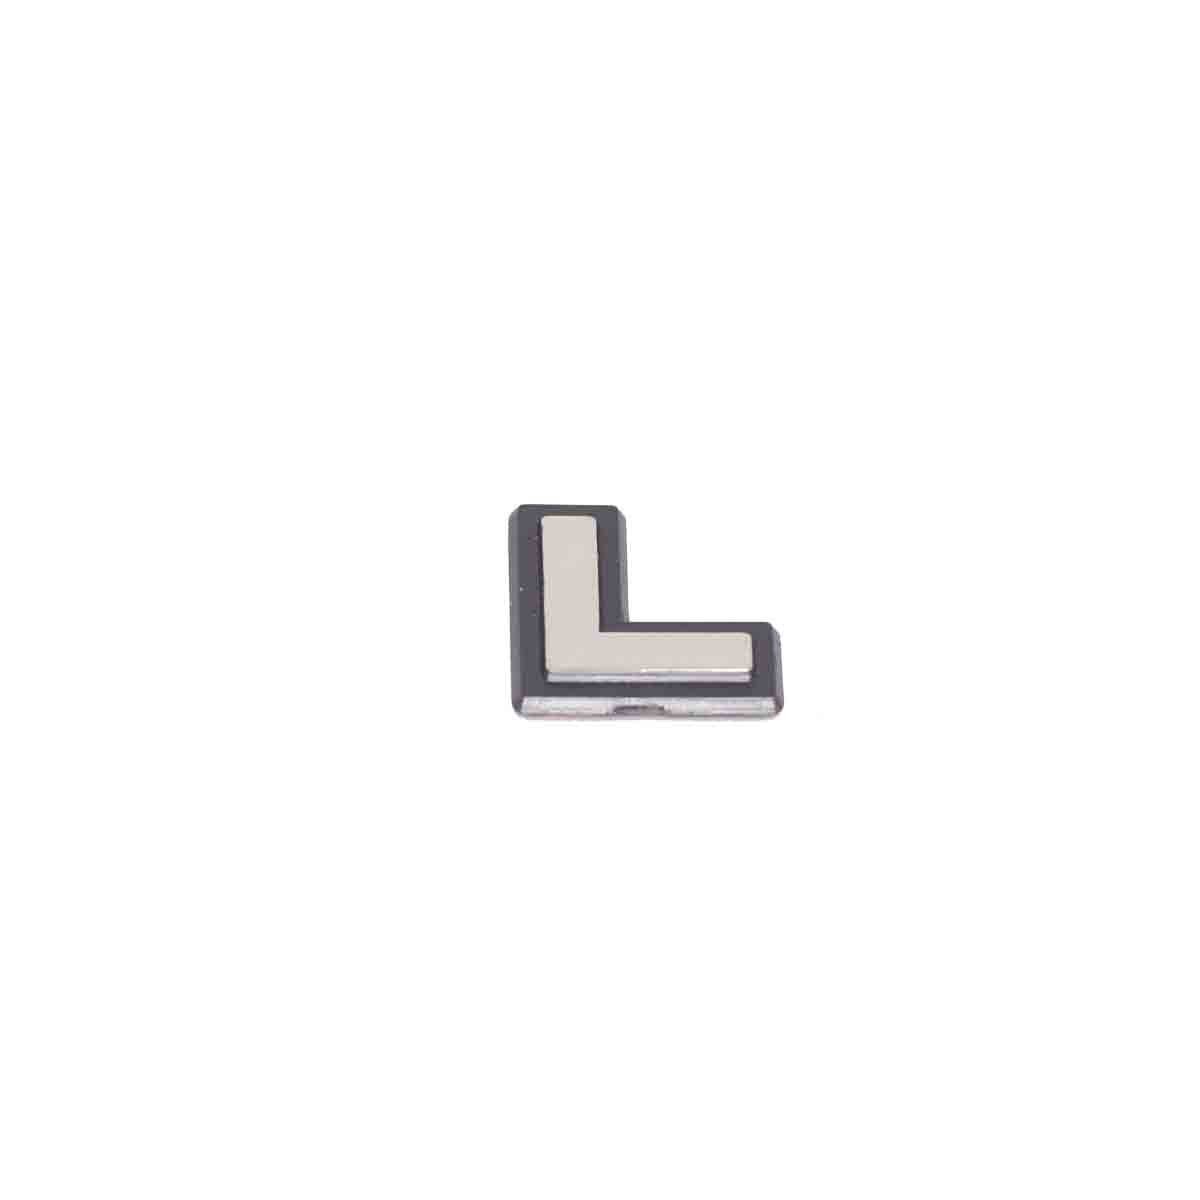 Emblema L (Escort 94) Brilhante